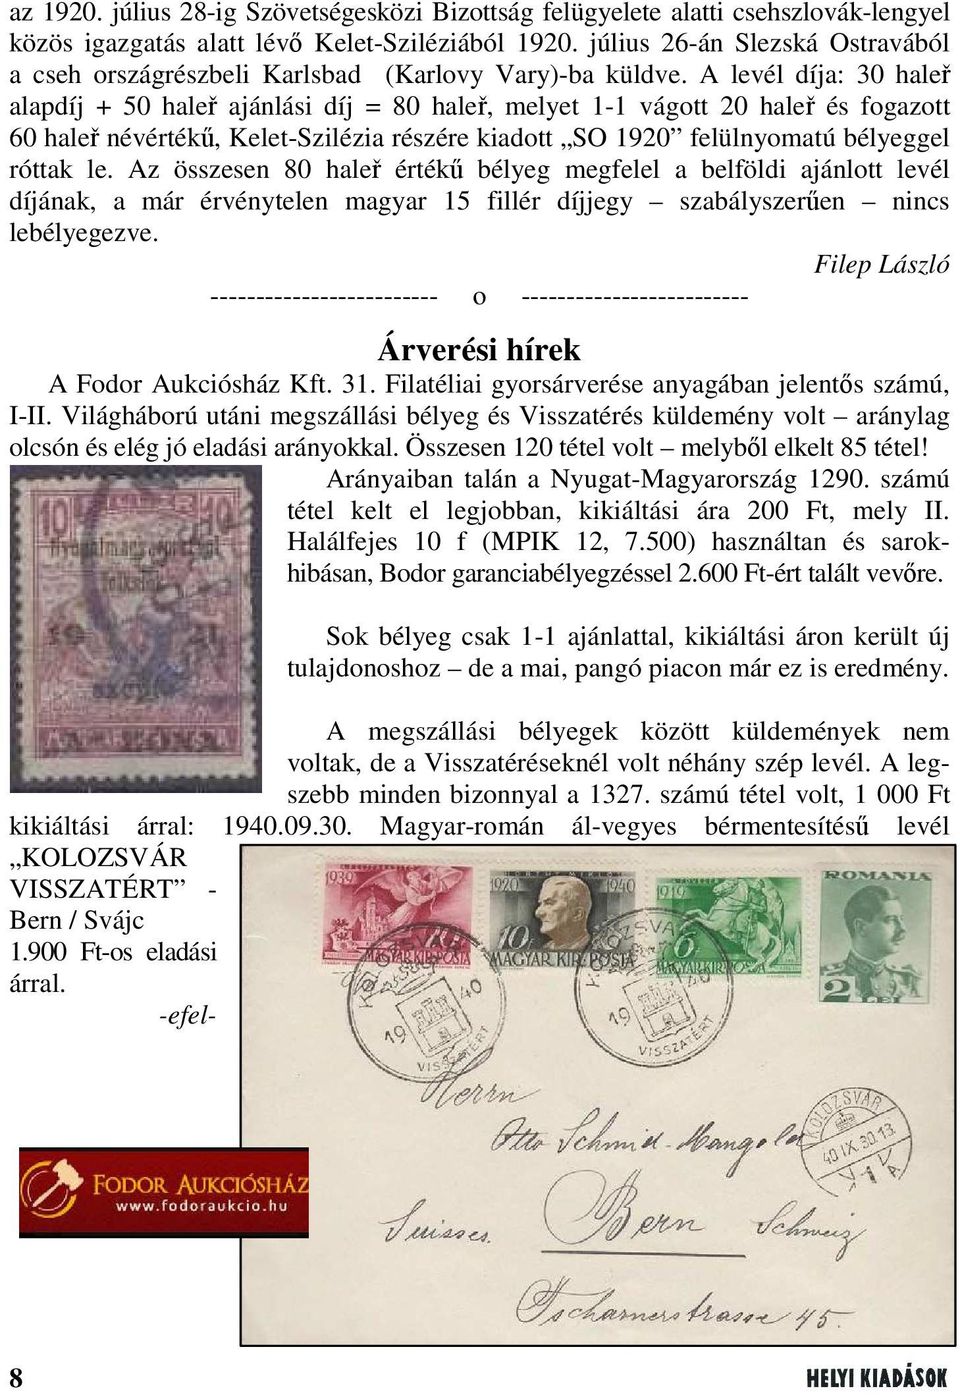 A levél díja: 30 haleř alapdíj + 50 haleř ajánlási díj = 80 haleř, melyet 1-1 vágott 20 haleř és fogazott 60 haleř névértékű, Kelet-Szilézia részére kiadott SO 1920 felülnyomatú bélyeggel róttak le.